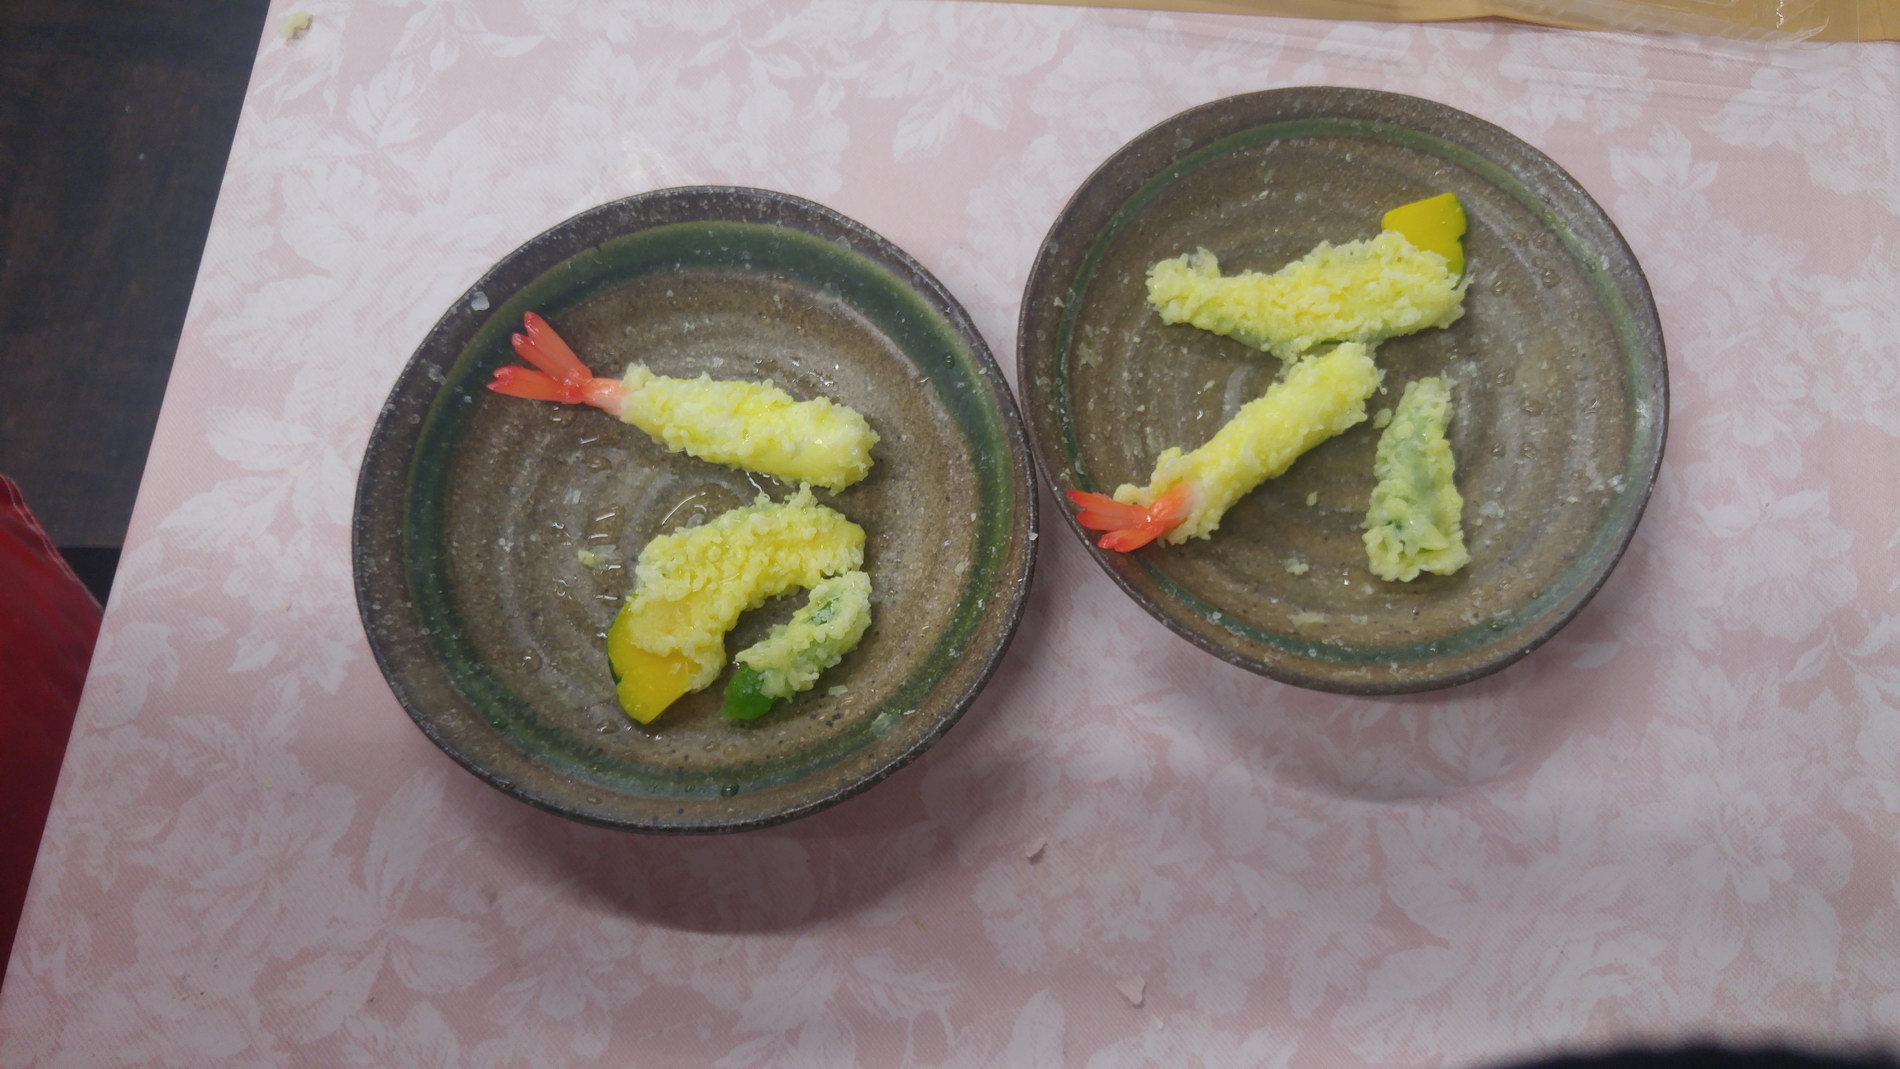 Making fake food models (“samples” in Japanese) of tempura